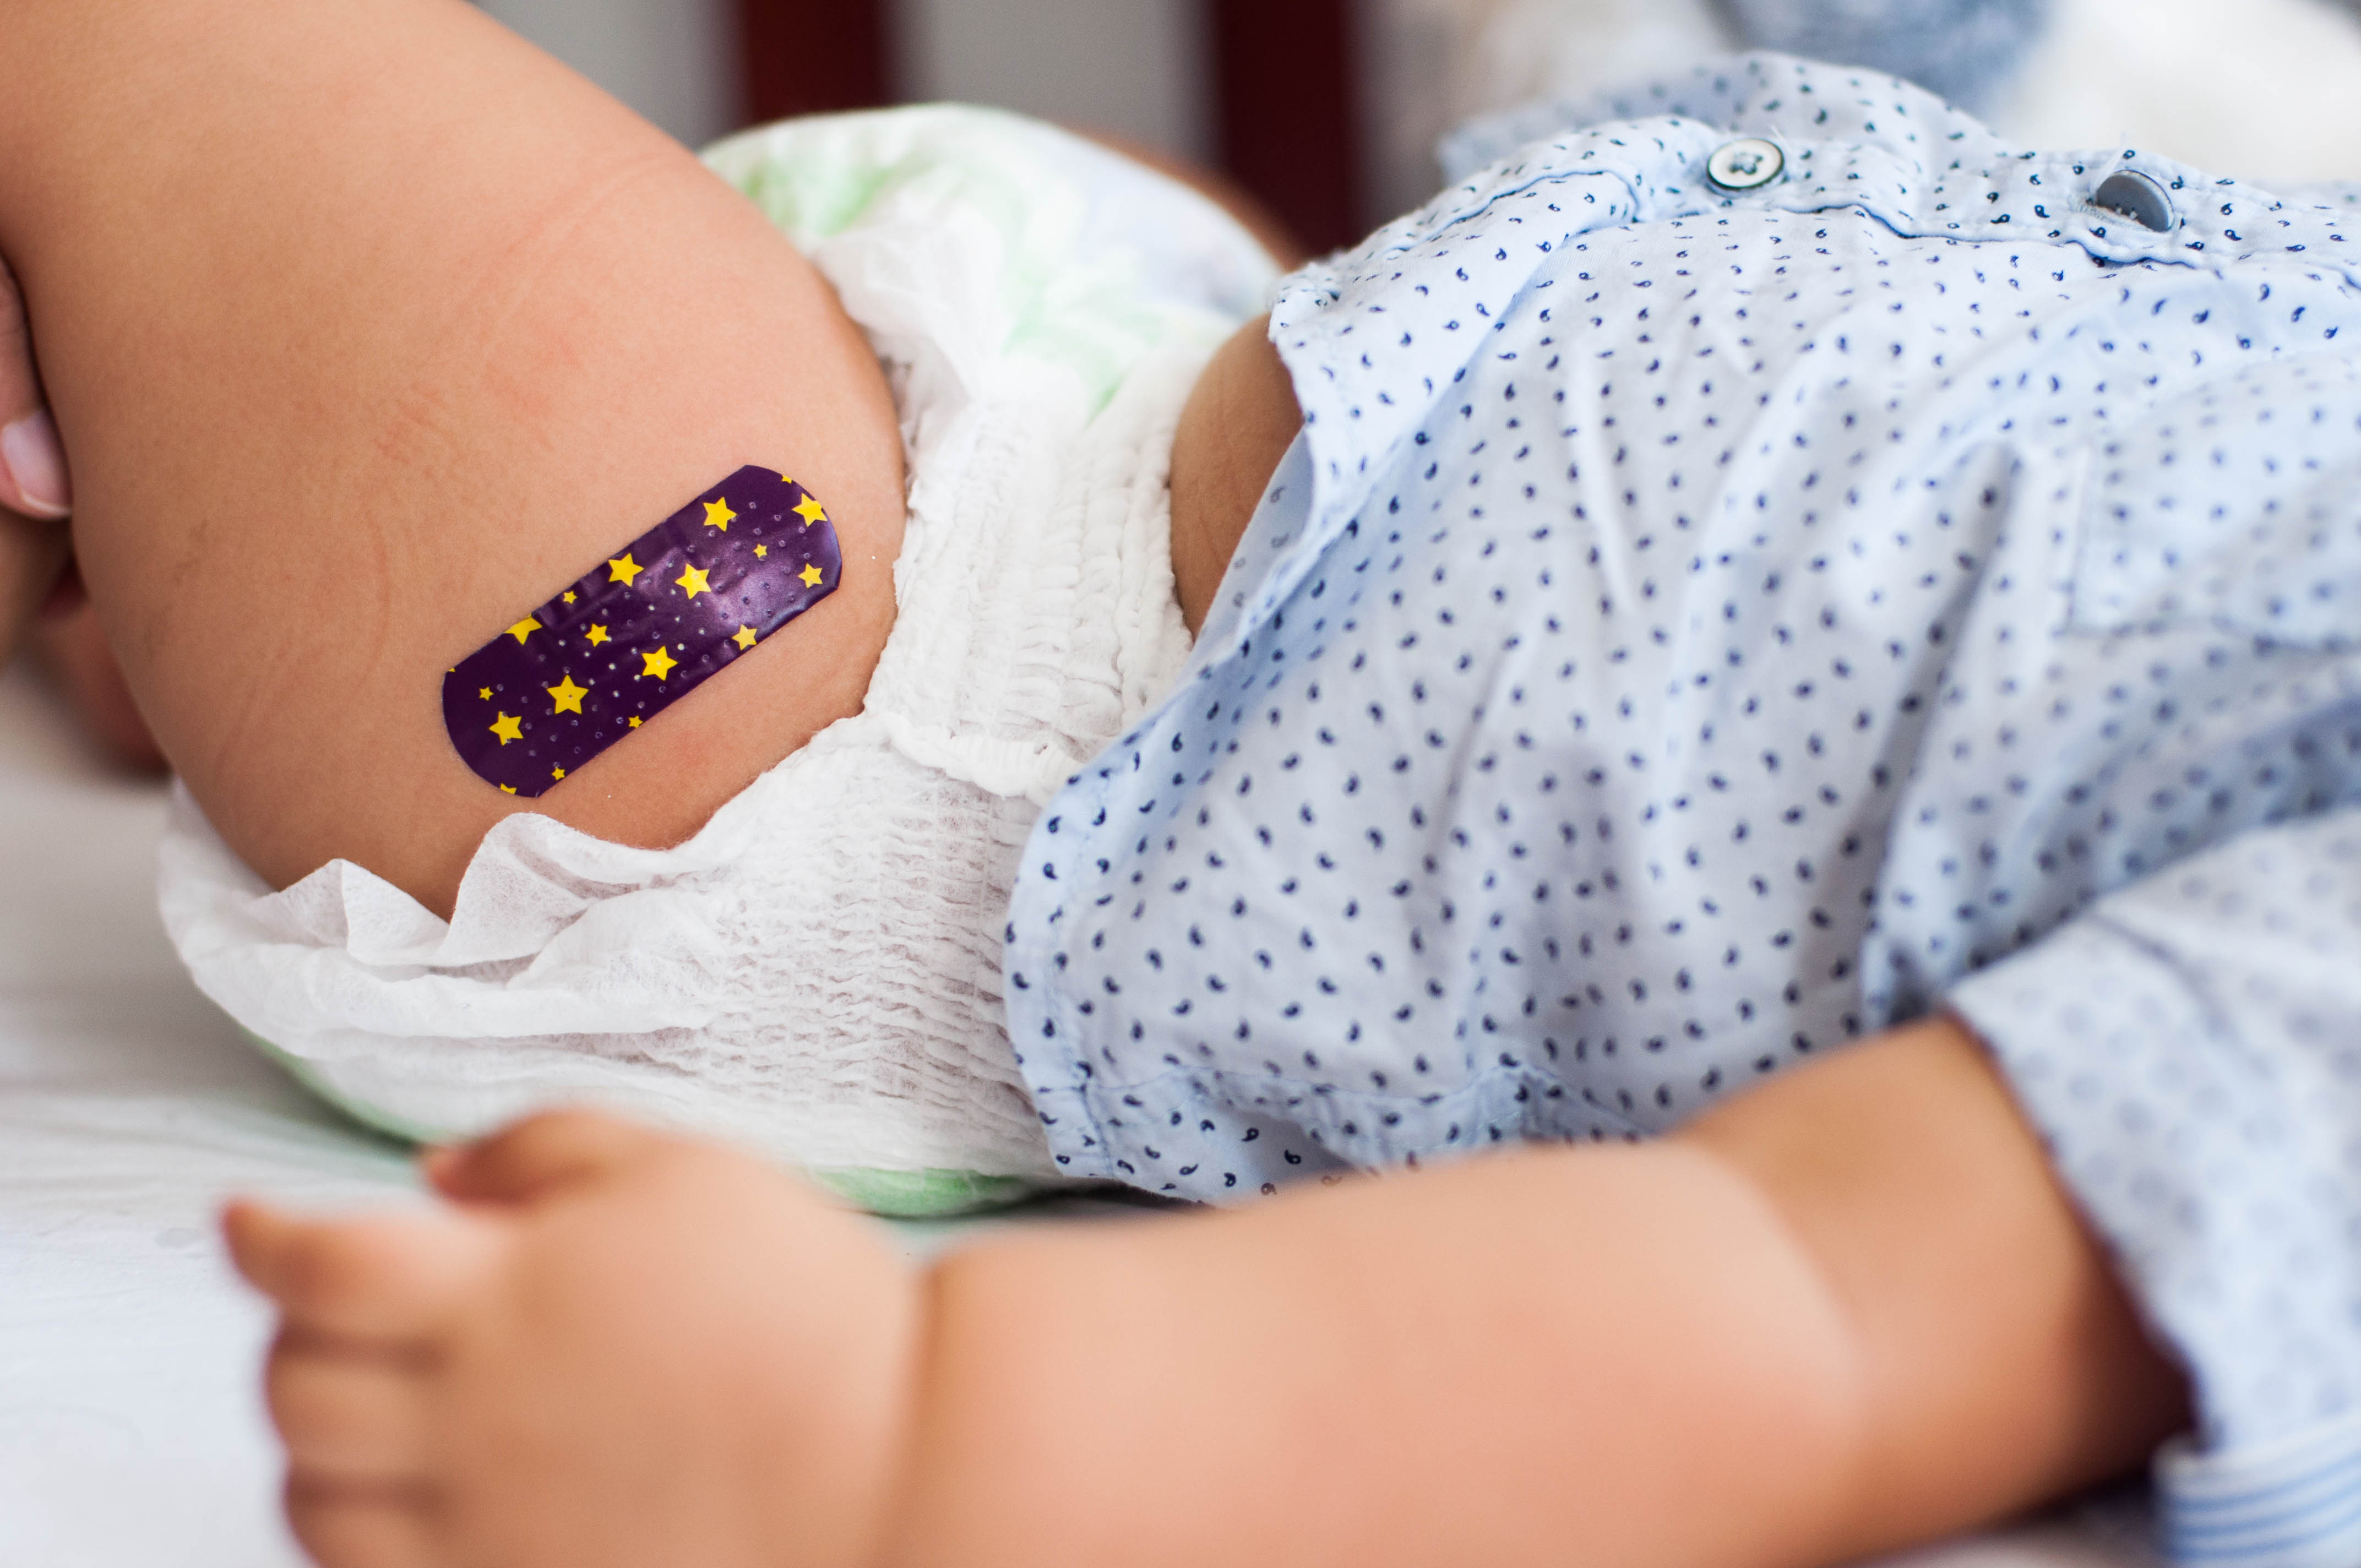 Saiba quais são as reações mais comuns pós vacinação na infância